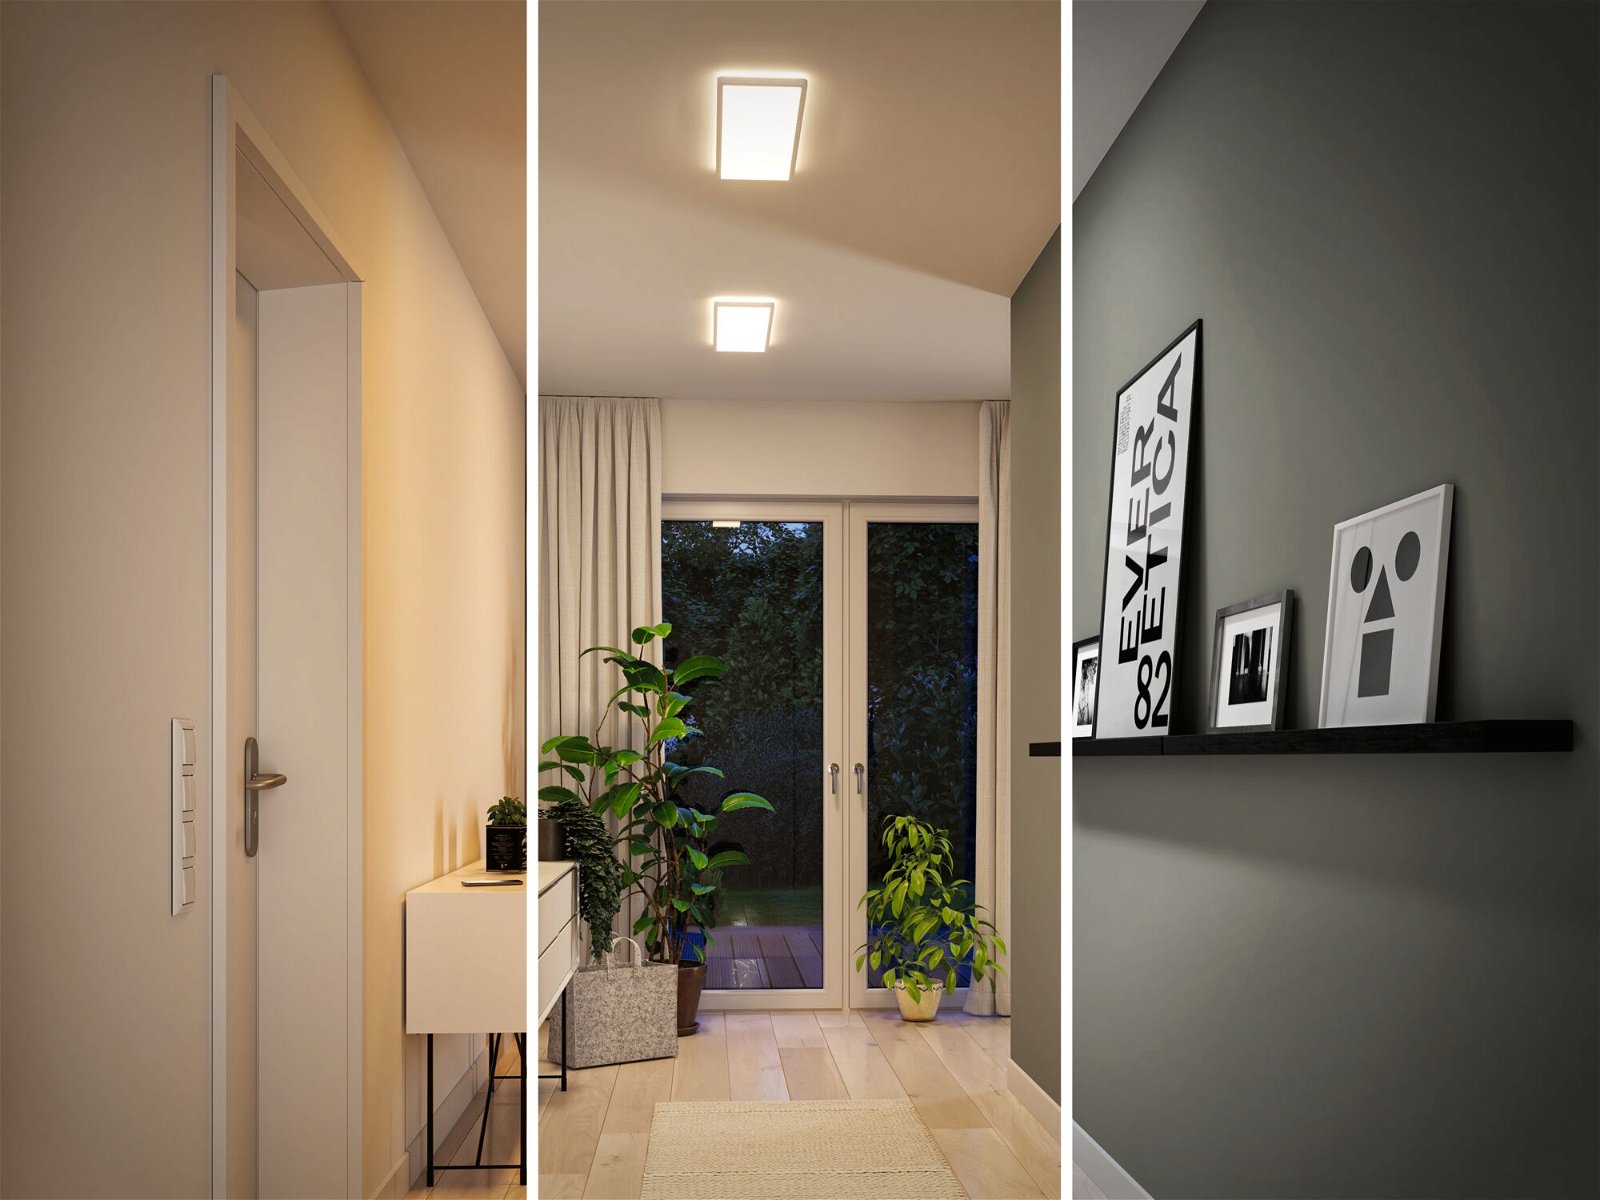 LED-panel Atria Shine Backlight kantet 580x200mm 22W 1800lm White Switch Hvid